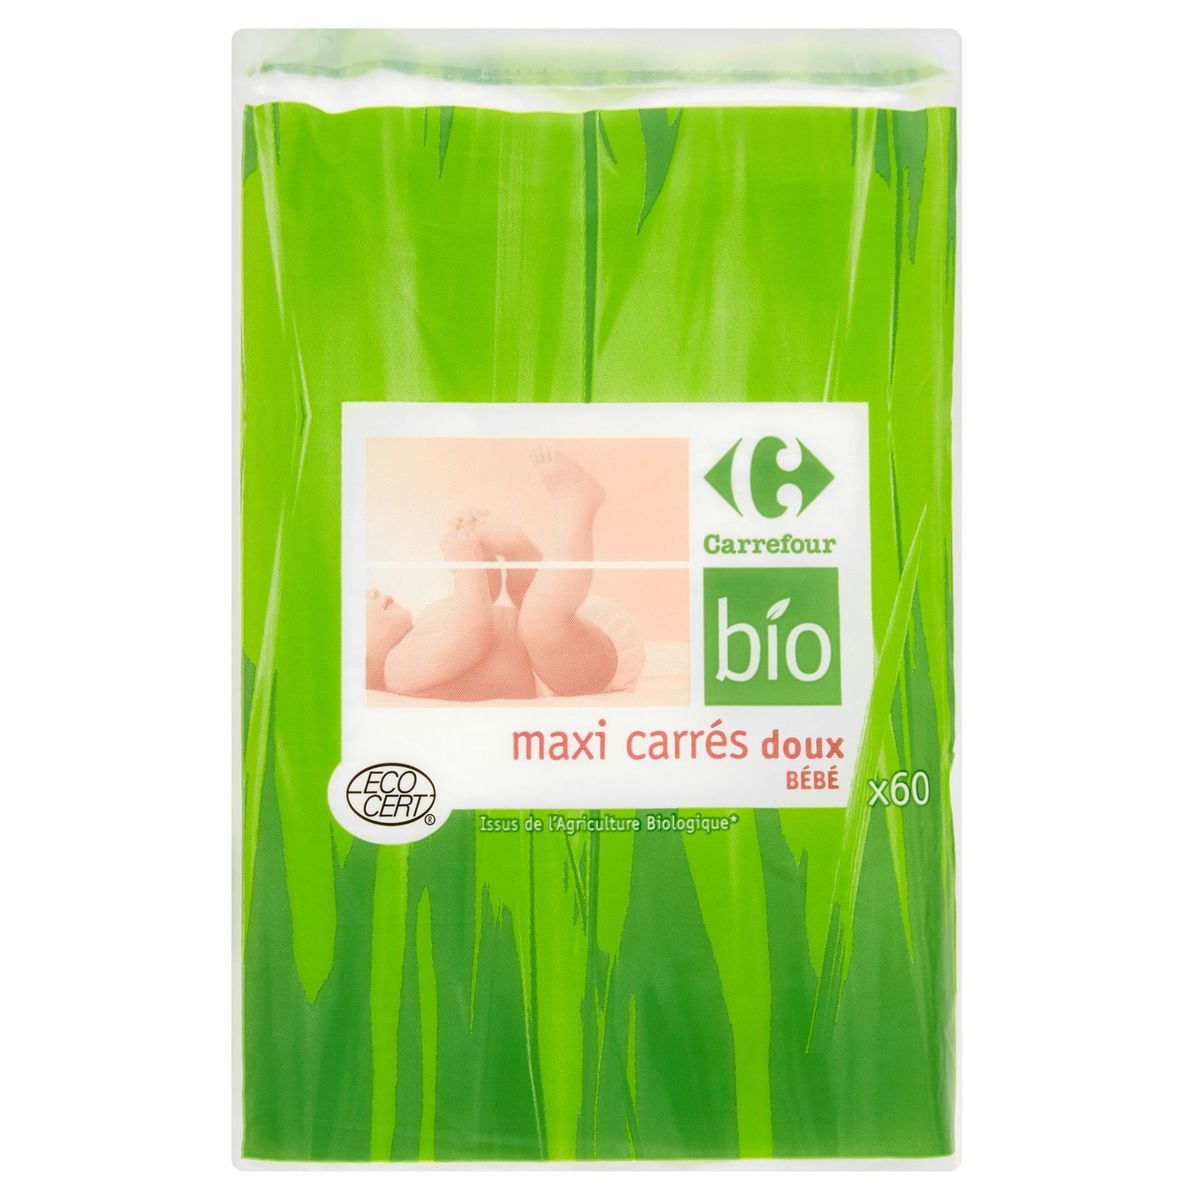 Carrefour Bio Maxi carrés doux bébé x 60